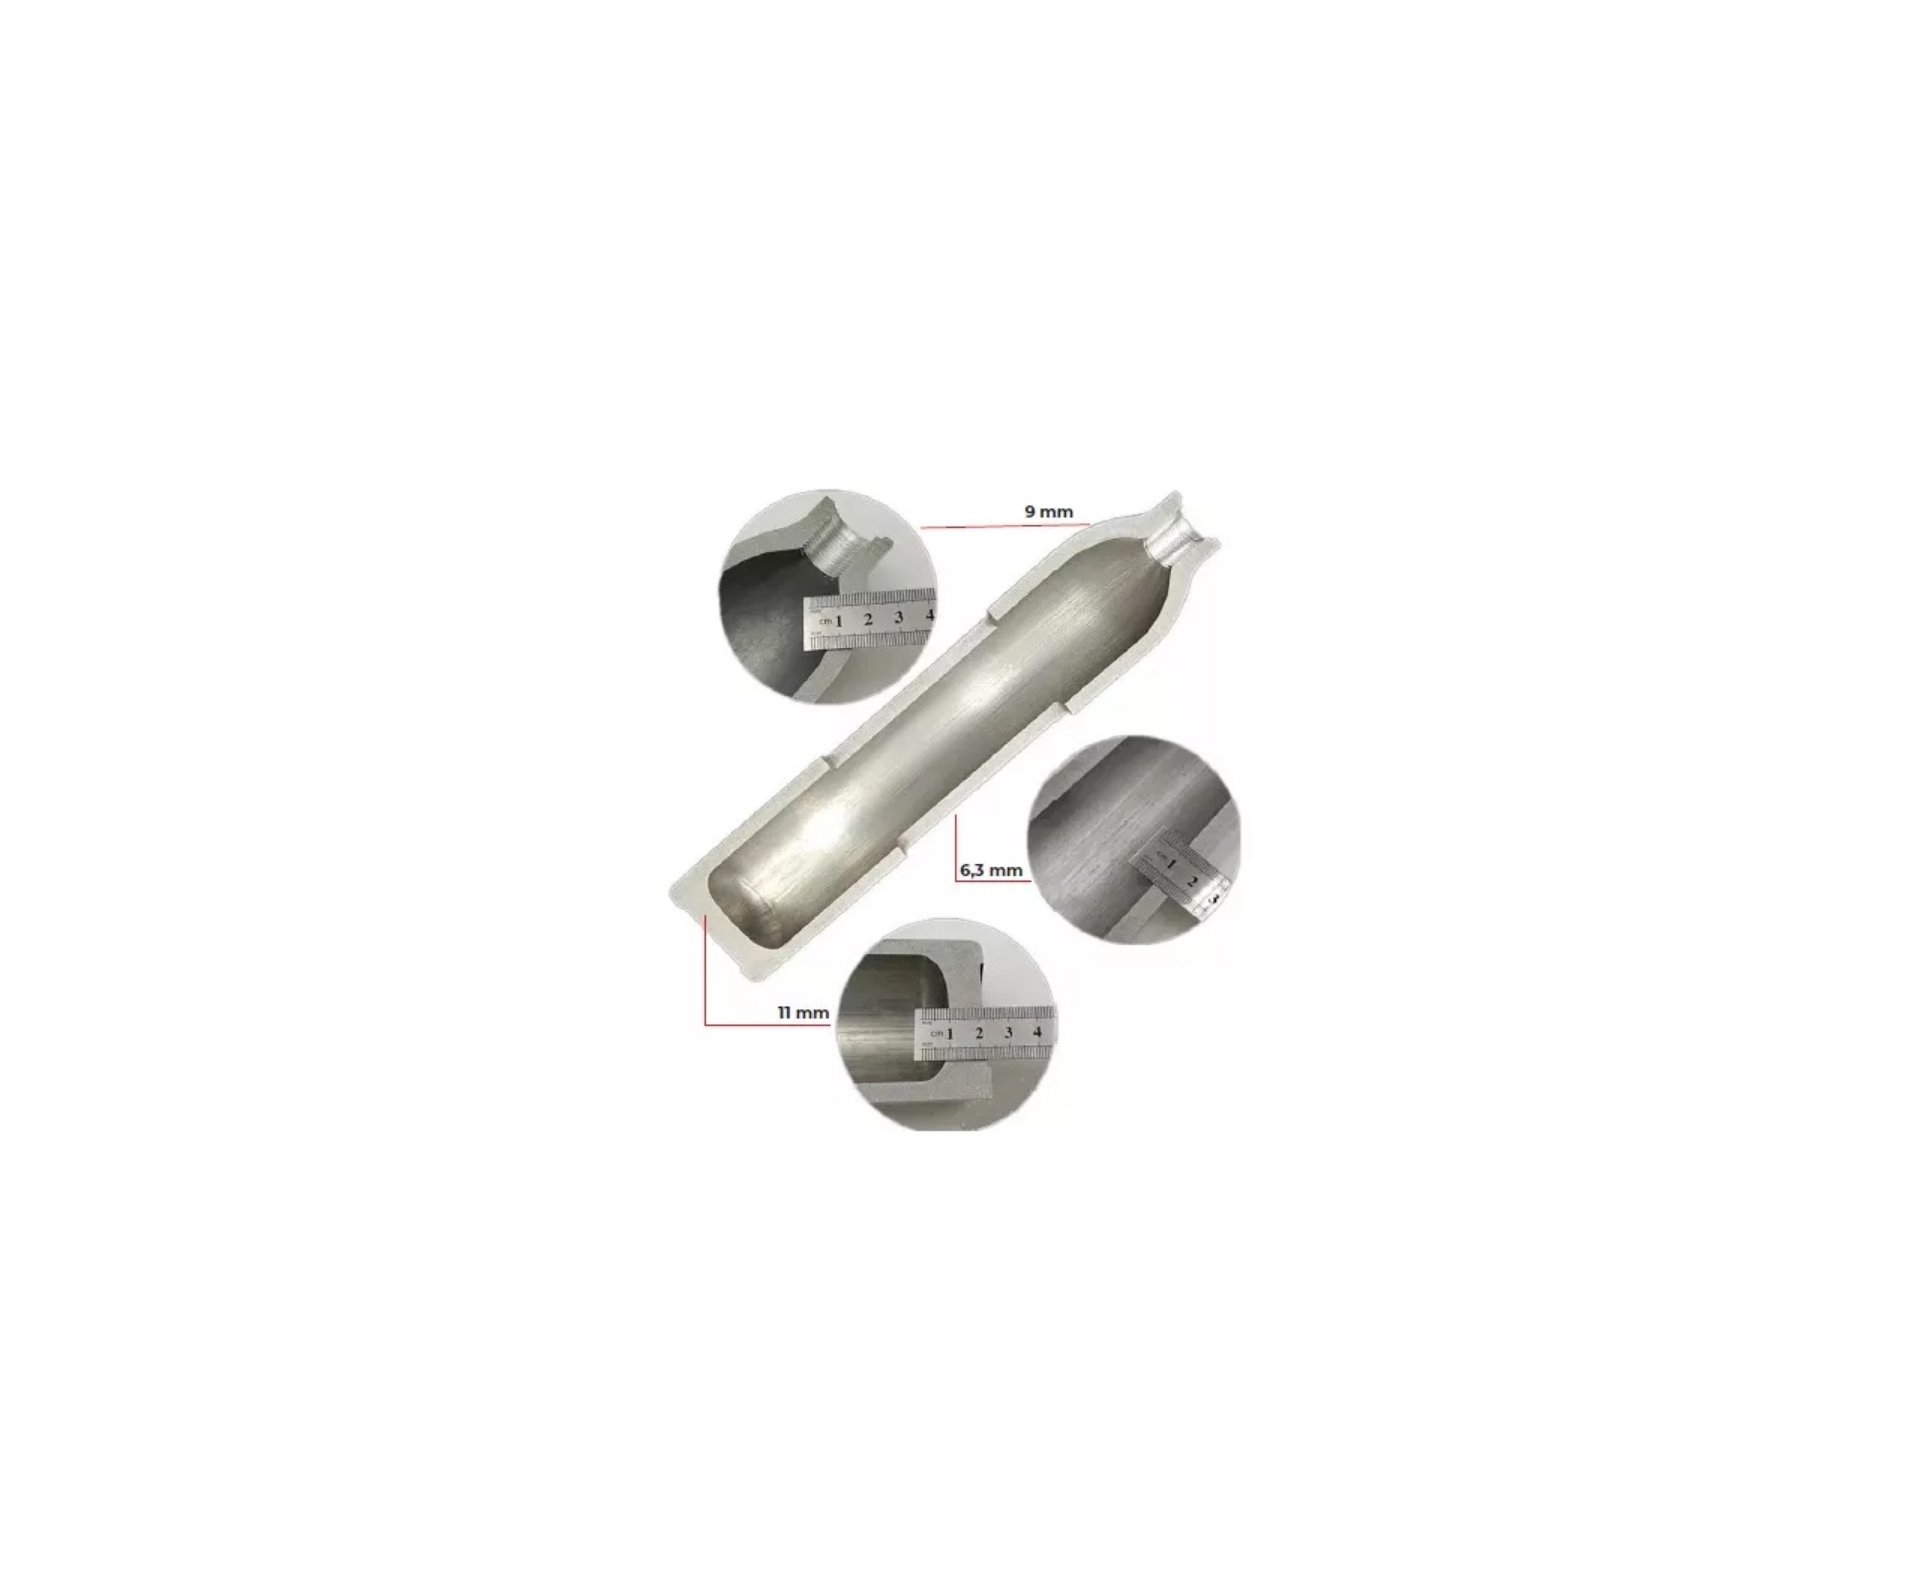 Cilindro 0,5L PCP 300 Bar Aluminio - Rossi